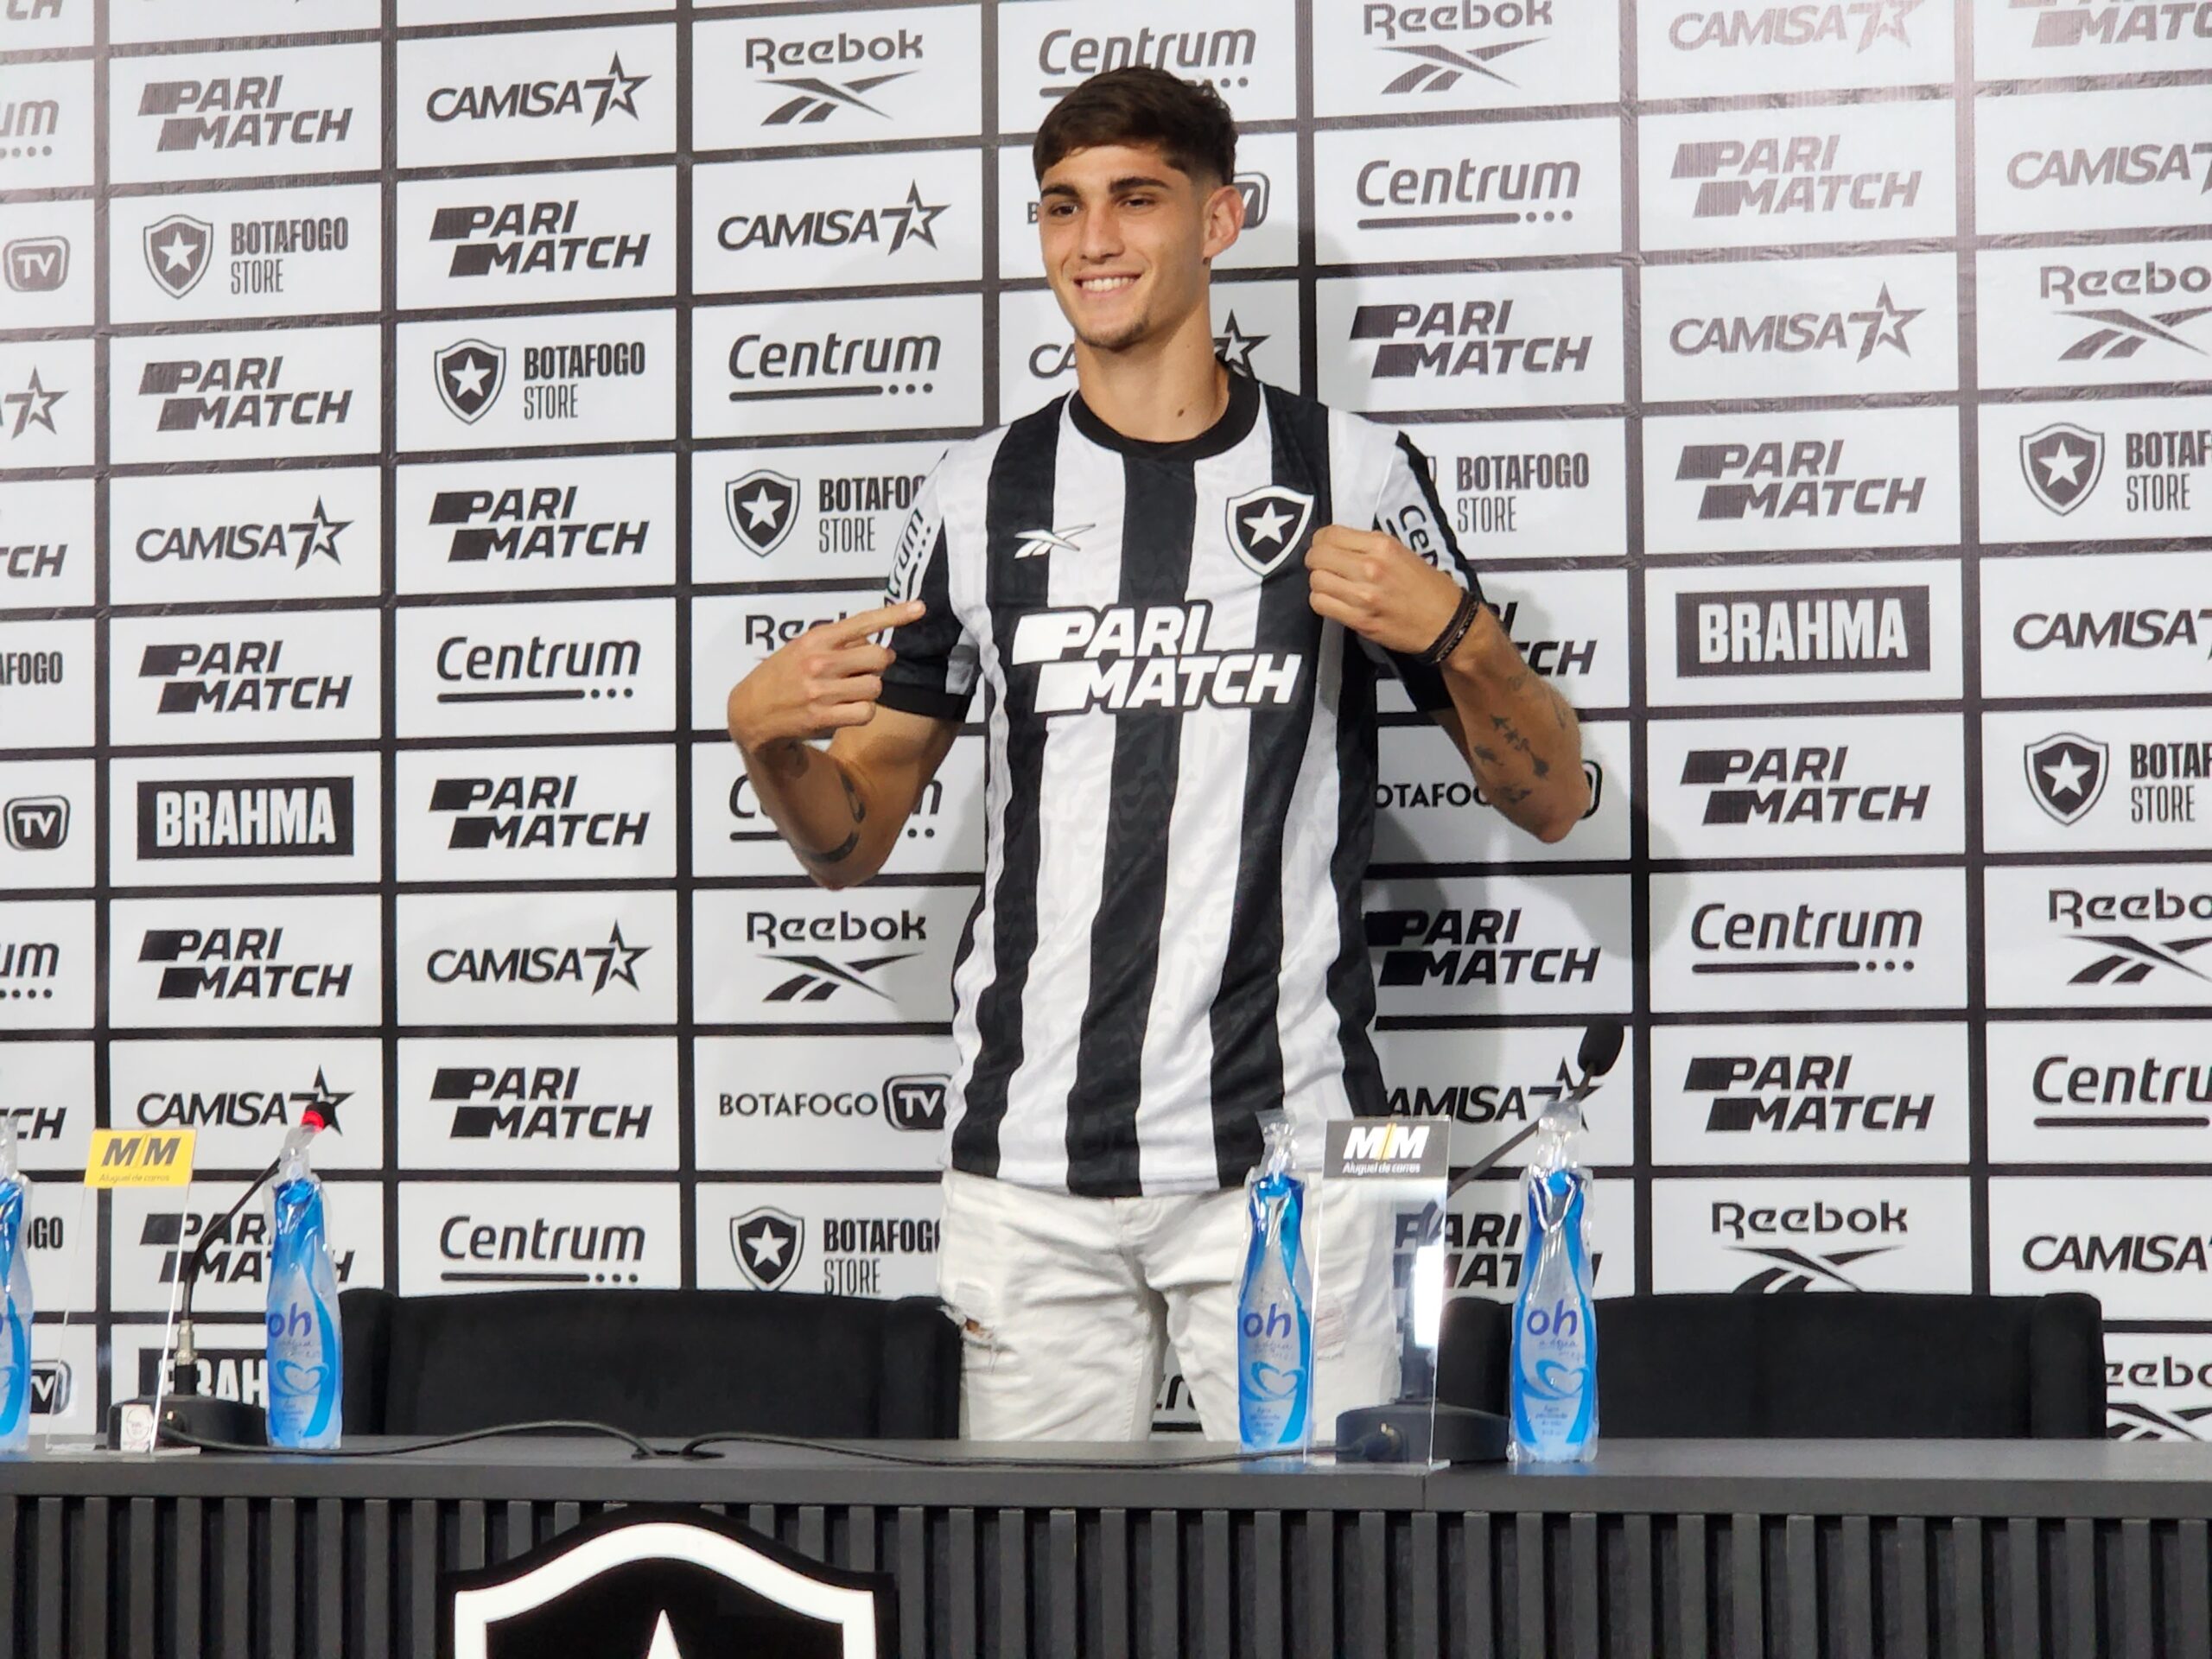 Com direito a número da sorte, Valentín Adamo é apresentado fala em 'salto'  na sua carreira ao chegar ao Botafogo - ISTOÉ Independente